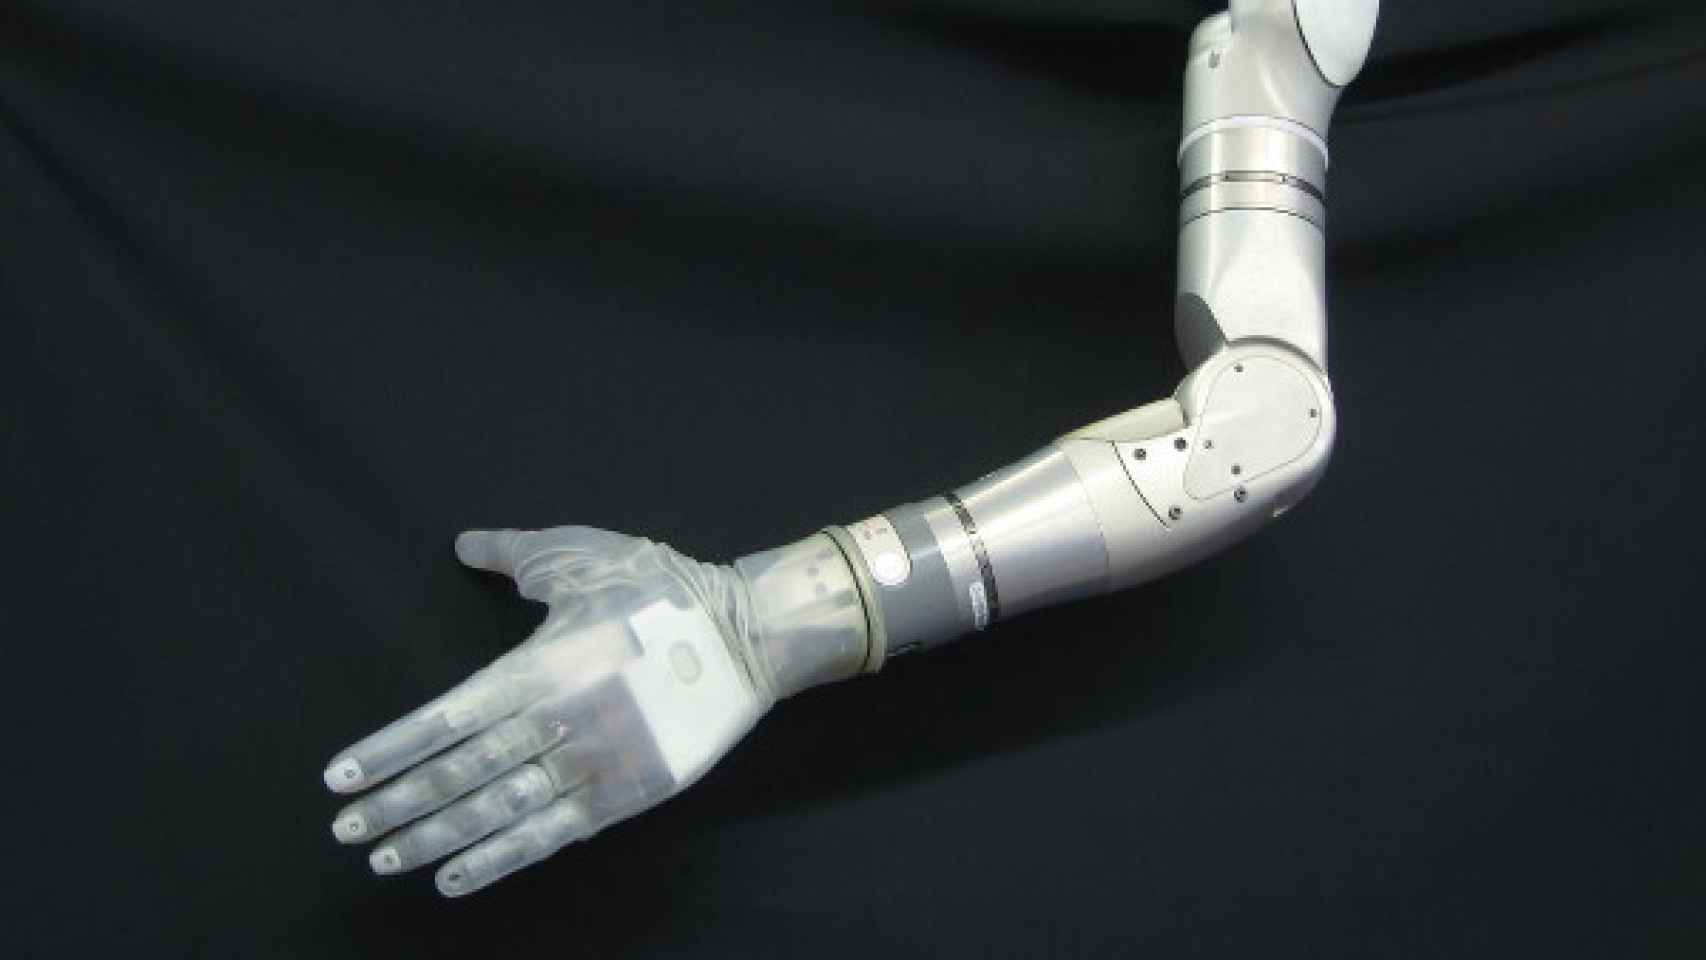 brazo protesico darpa 2